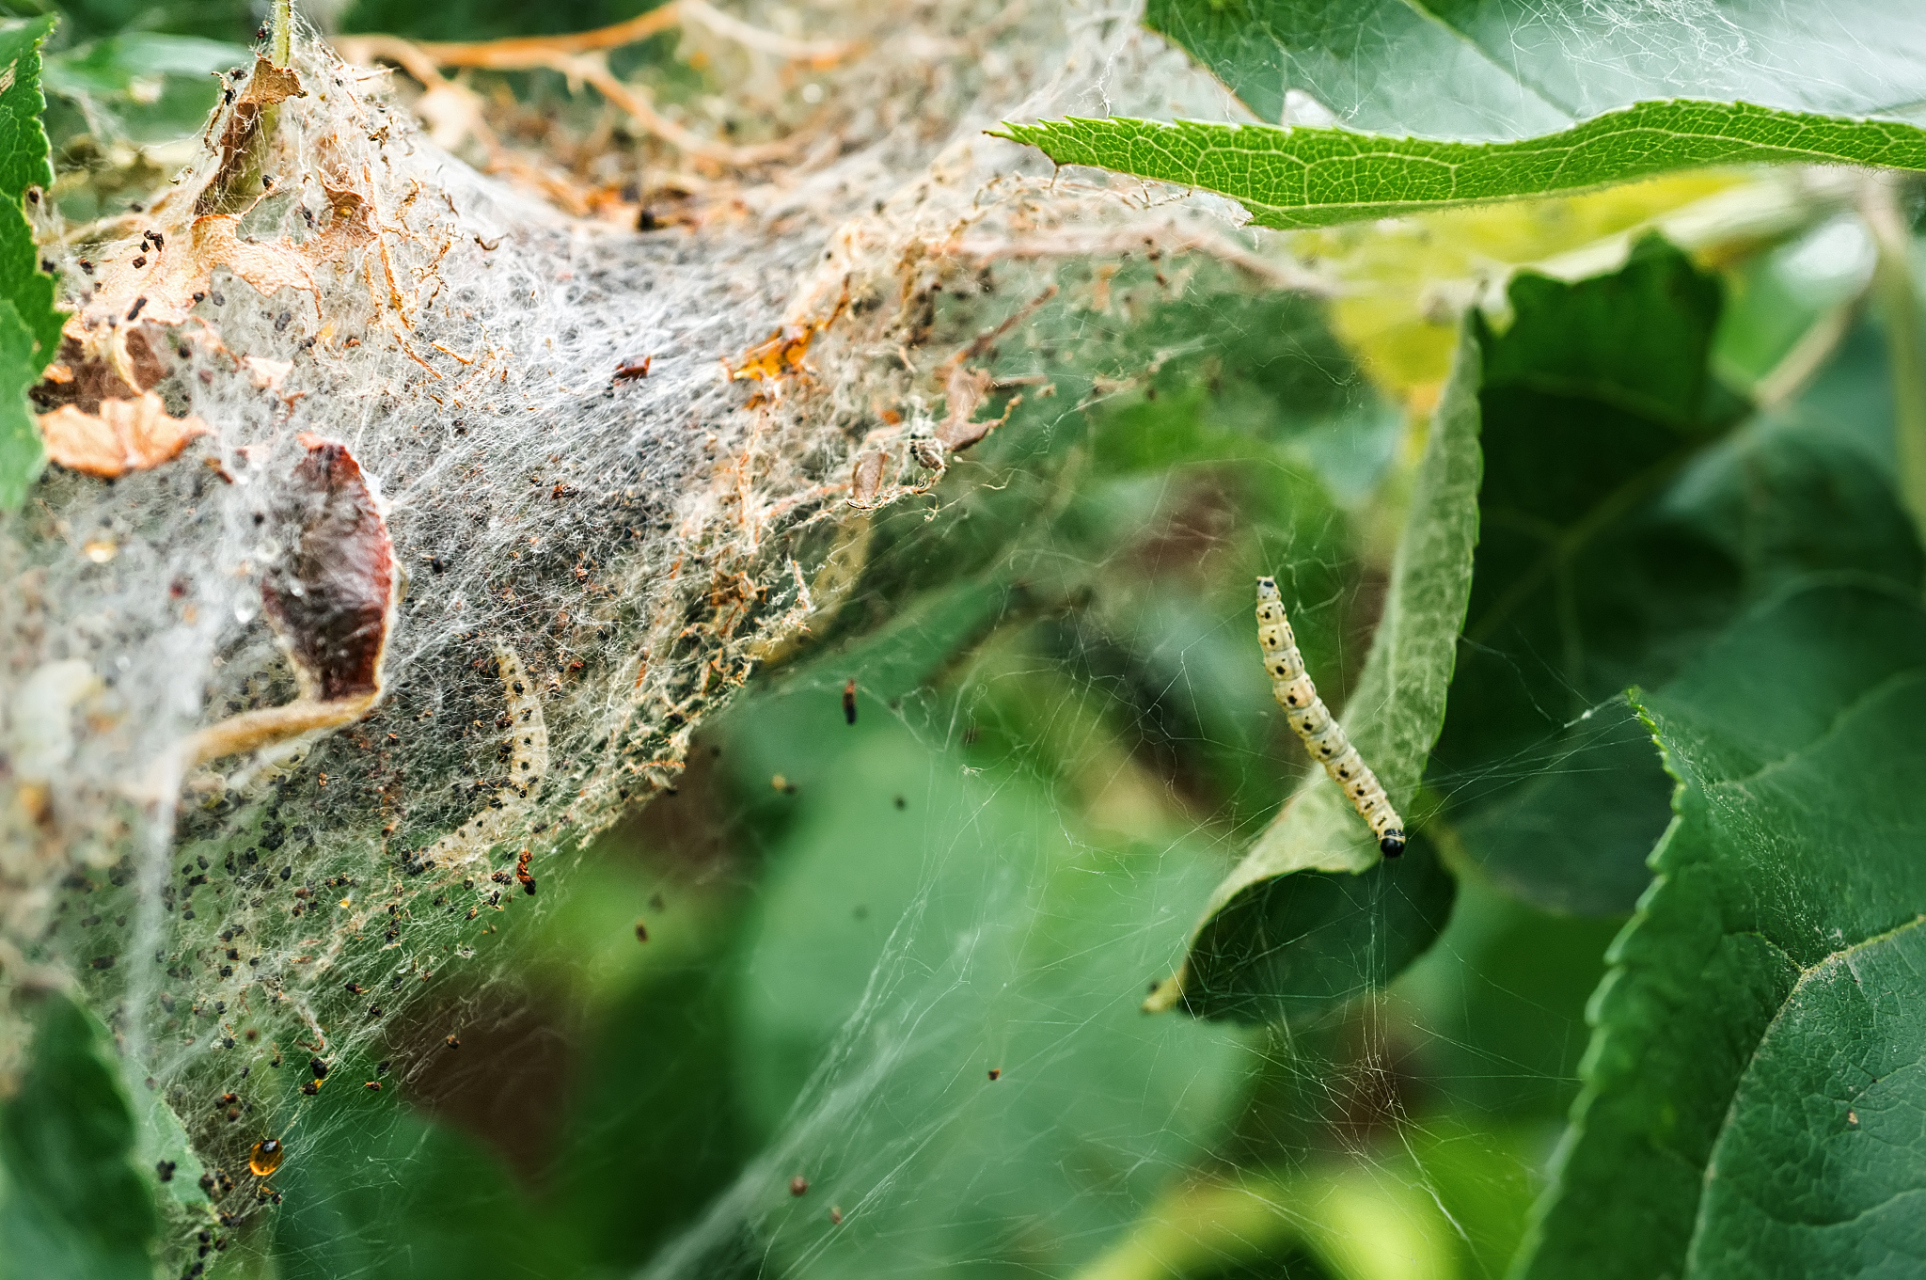 棉铃虫是棉花的一种重要害虫,其幼虫在不同的龄期有不同的特征,可以